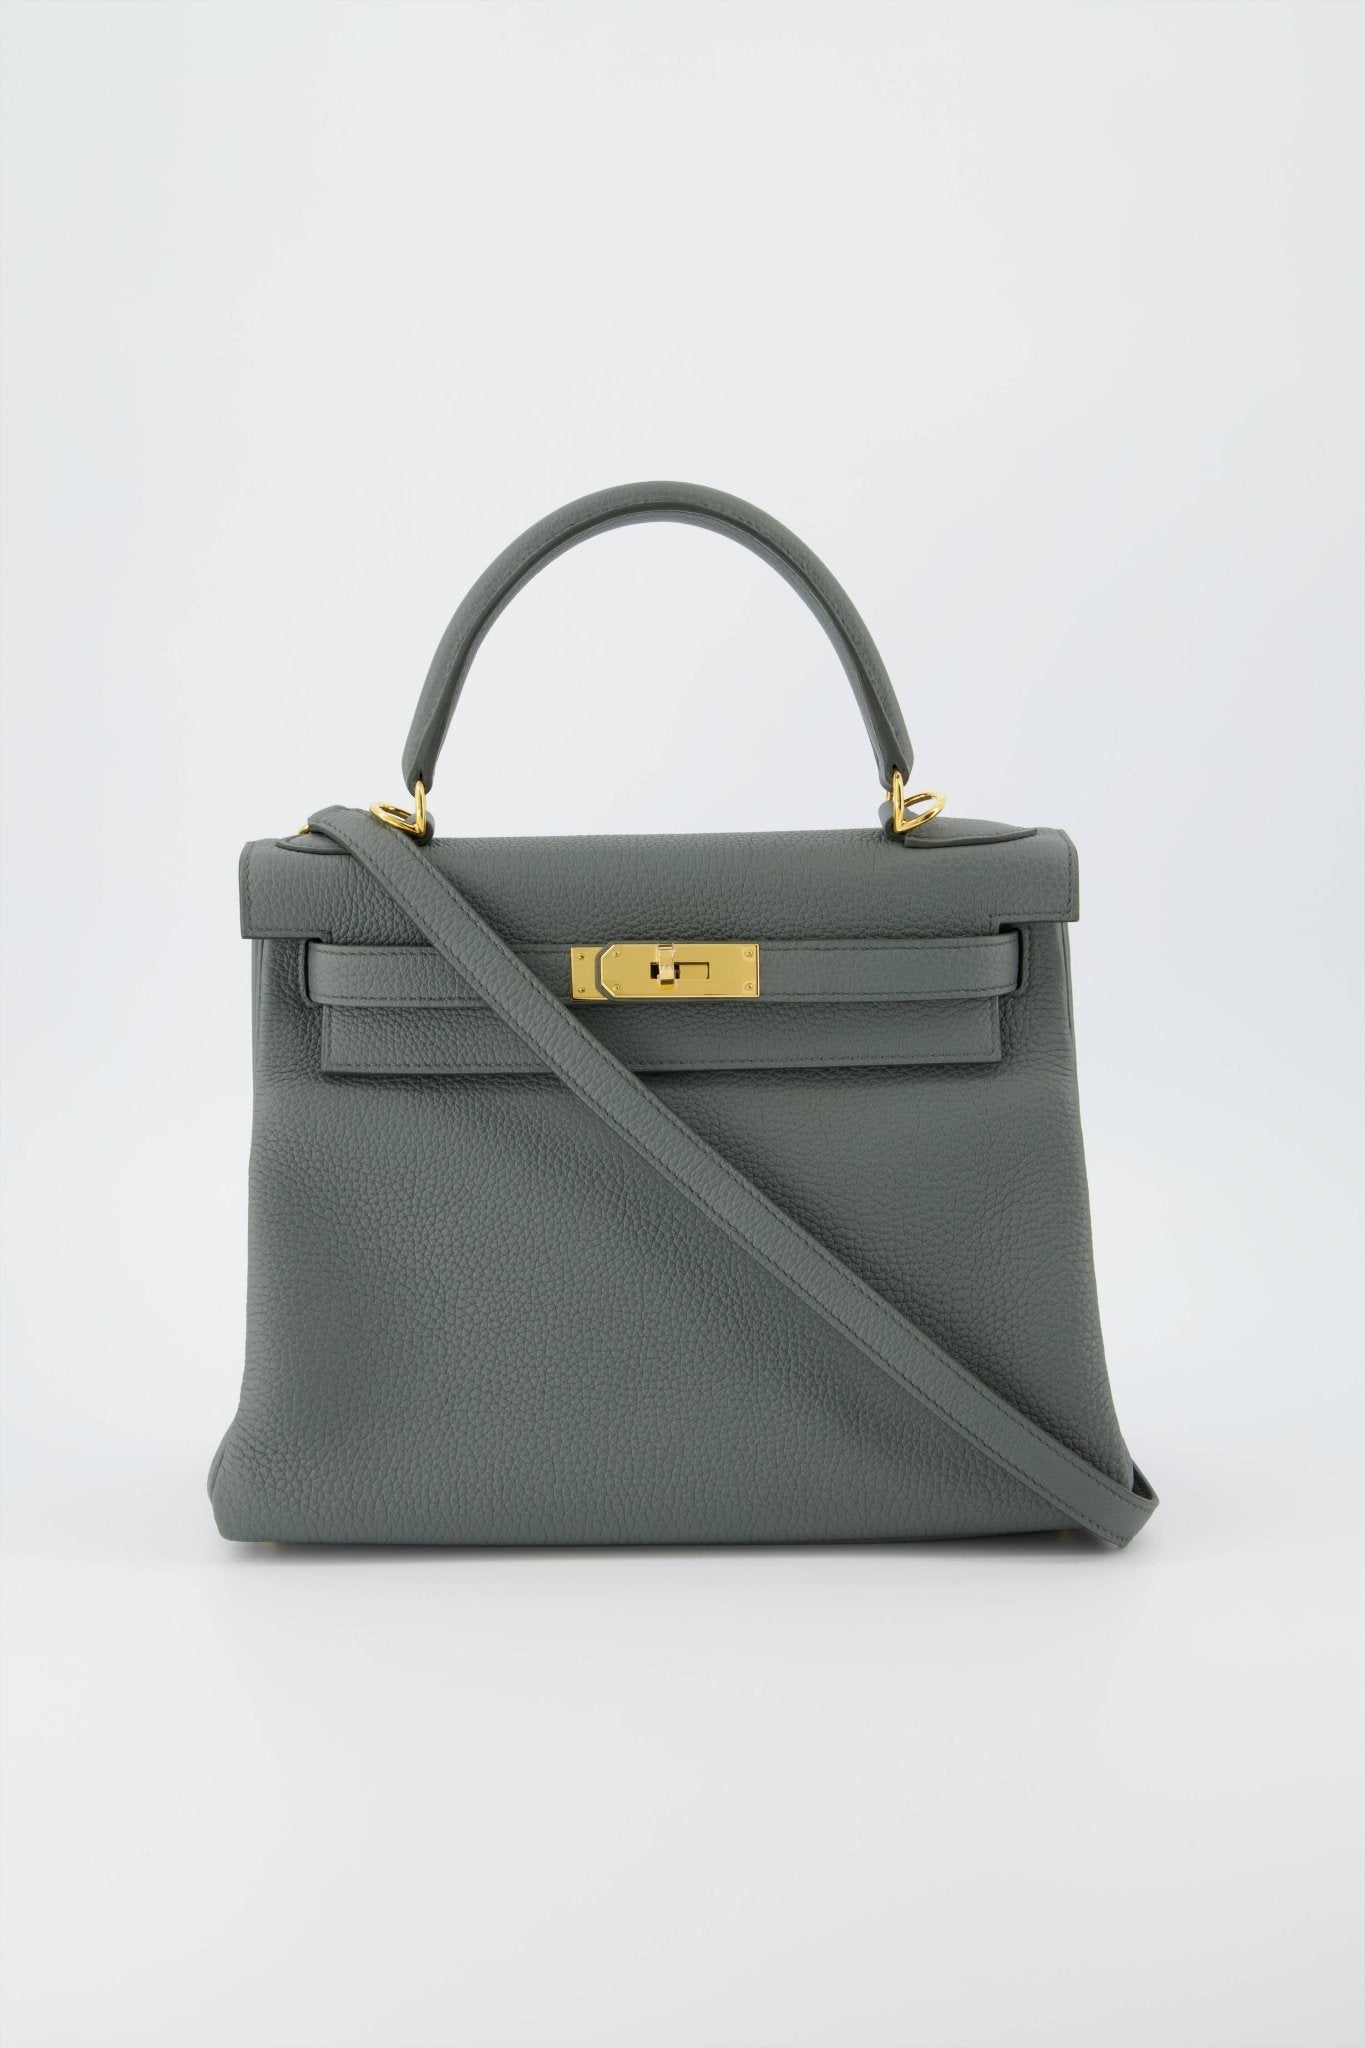 Hermes Kelly 28 Returnee Handbag Craie Togo Leather With Palladium